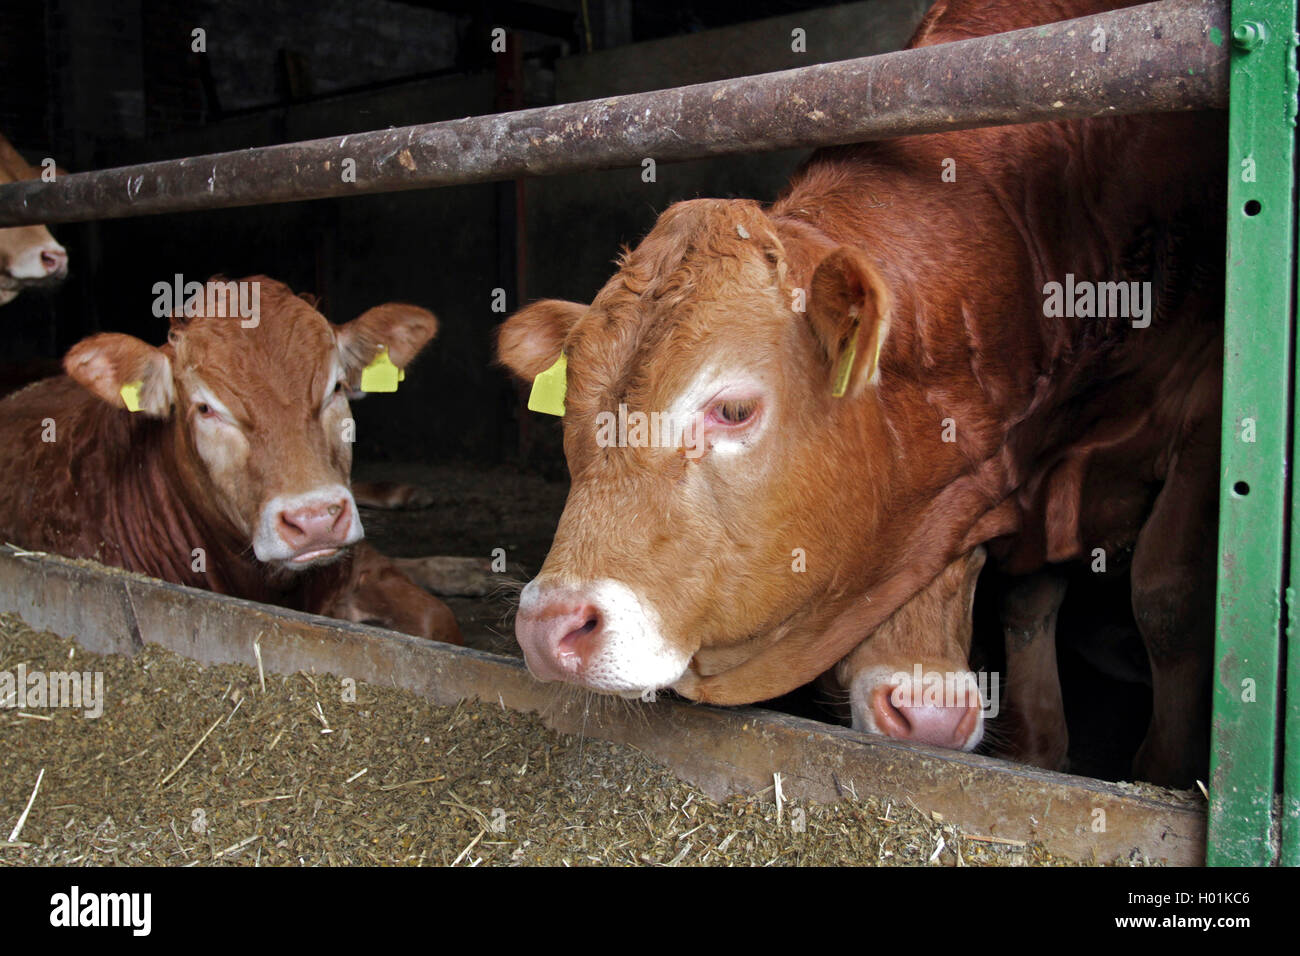 Limousin ganado bovino, ganado doméstico (Bos primigenius f. taurus), Lemosín cabezas de ganado en el establo, Alemania Foto de stock